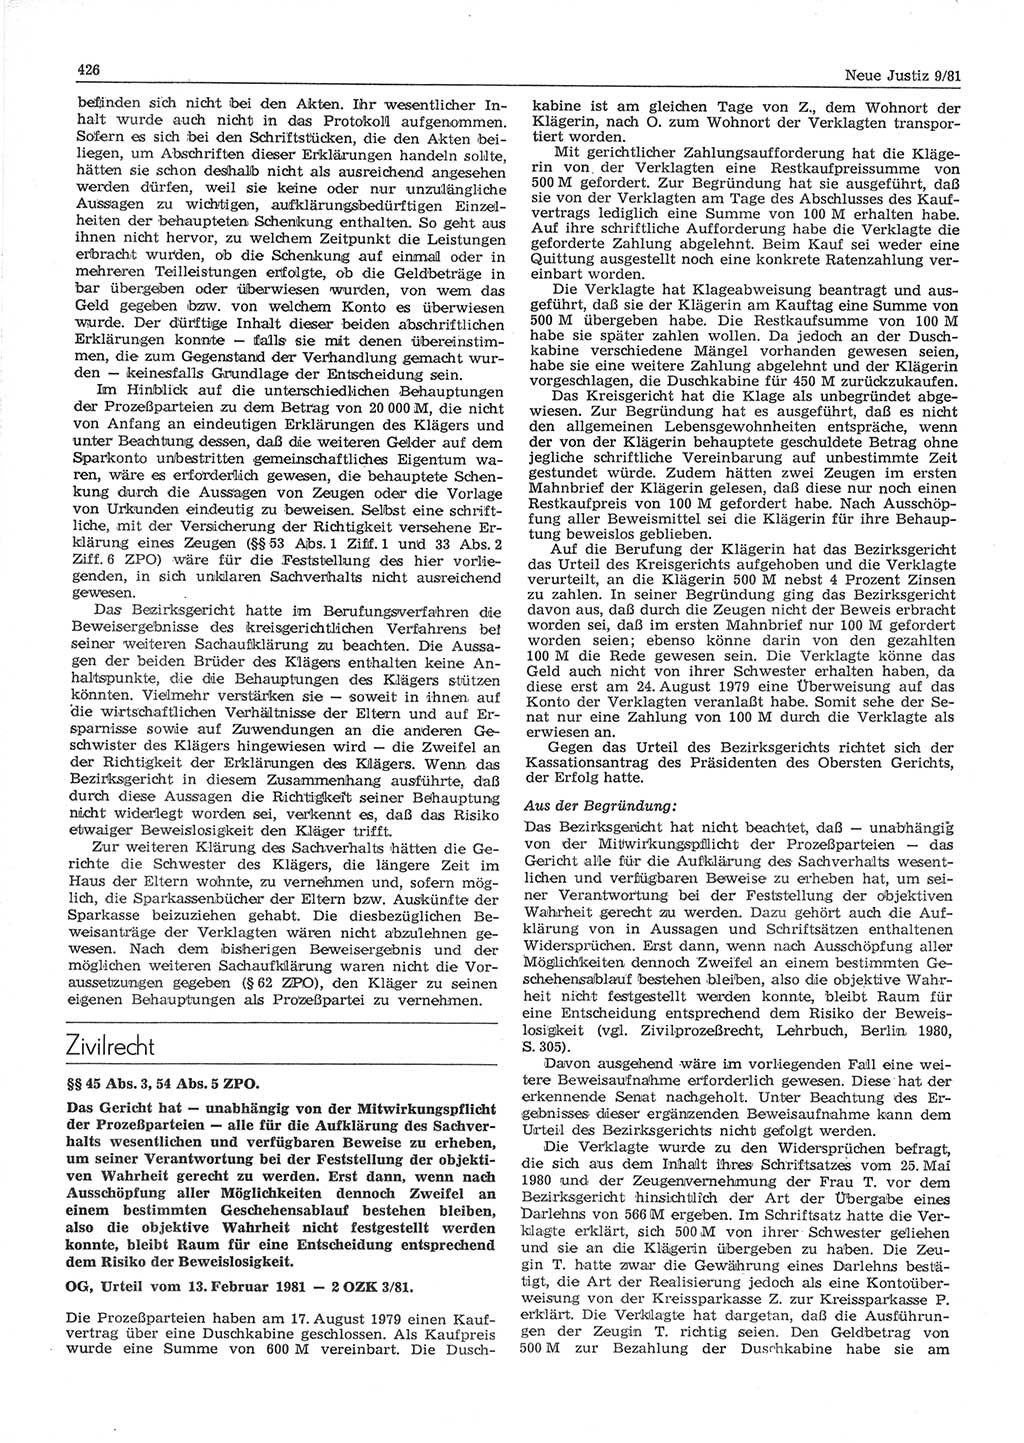 Neue Justiz (NJ), Zeitschrift für sozialistisches Recht und Gesetzlichkeit [Deutsche Demokratische Republik (DDR)], 35. Jahrgang 1981, Seite 426 (NJ DDR 1981, S. 426)